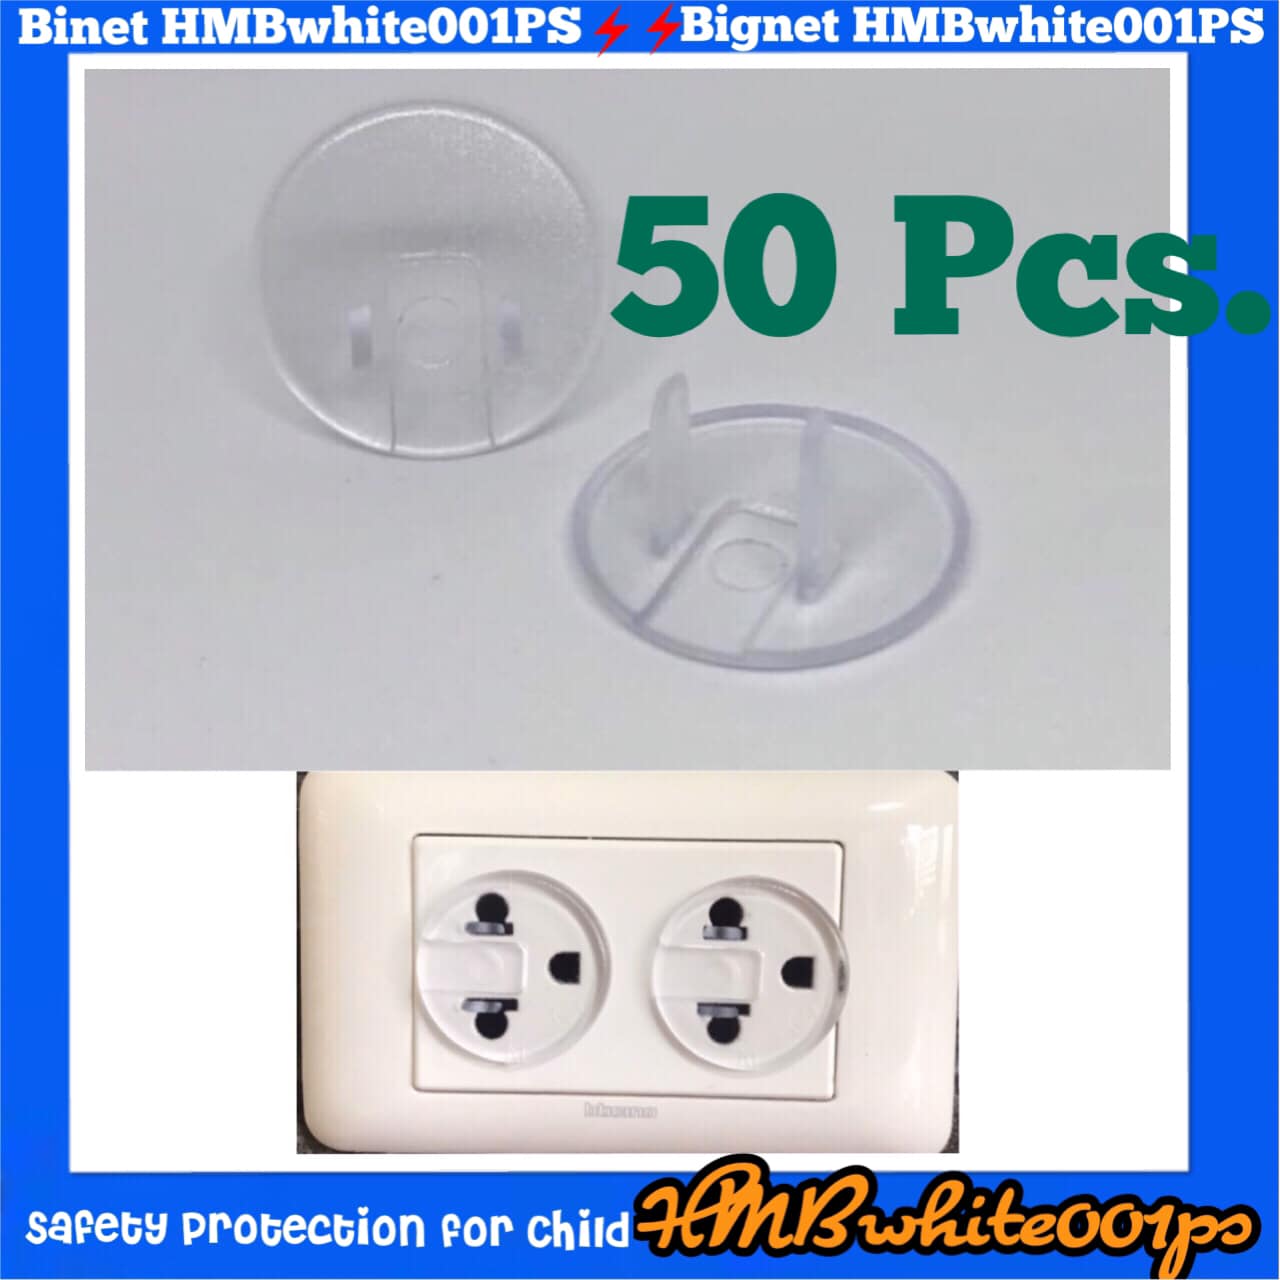 H.M.B. Plug Outlet ‼️ ที่อุดรูปลั๊กไฟ รุ่นWhite001PsColor ที่ปิดรูปลั๊กไฟ ฝาครอบ ปลั๊กไฟ 10/20/30/40/50 ชิ้น  สีวัสดุ สีขาวใส White color  50 ชิ้น ( 50 Pcs. )